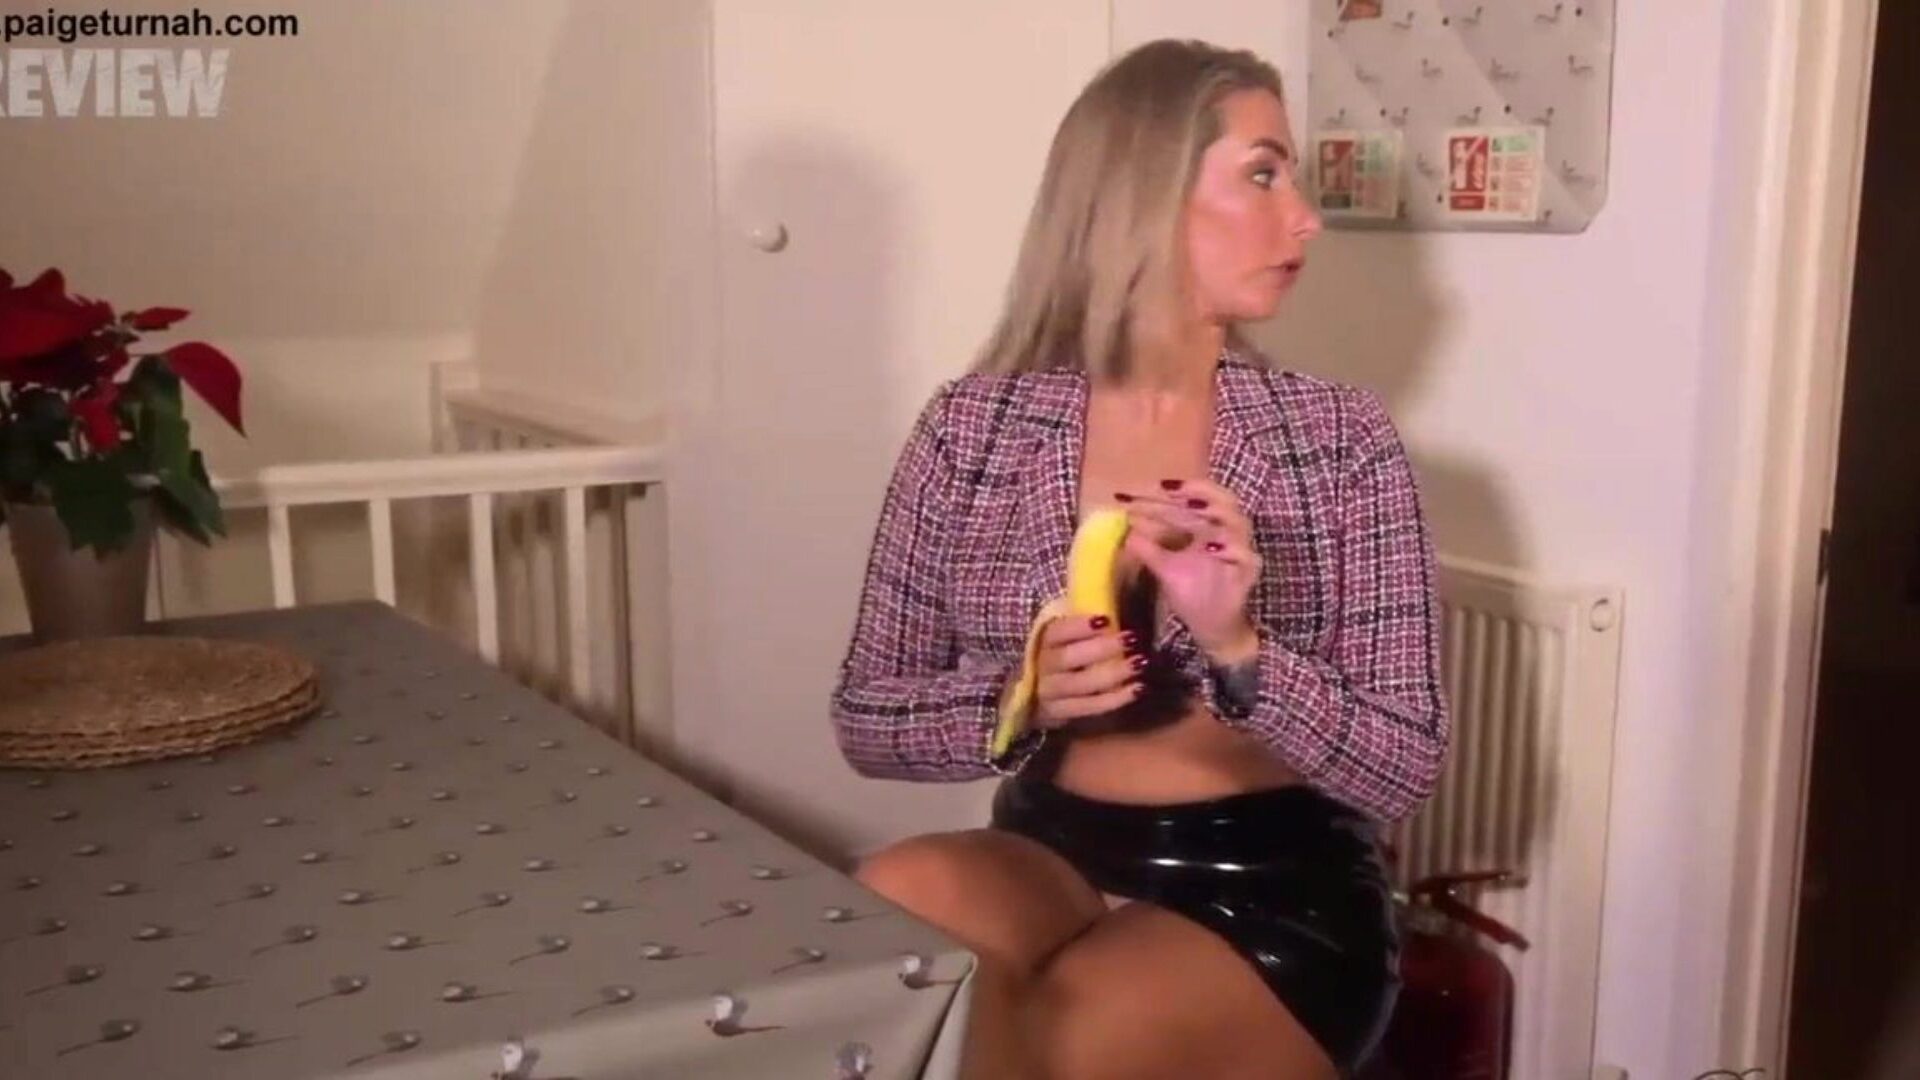 la ragazza britannica paige turnah è in pausa pranzo e ti stuzzica con il suo servizio orale di banana e gli osceni scarichi